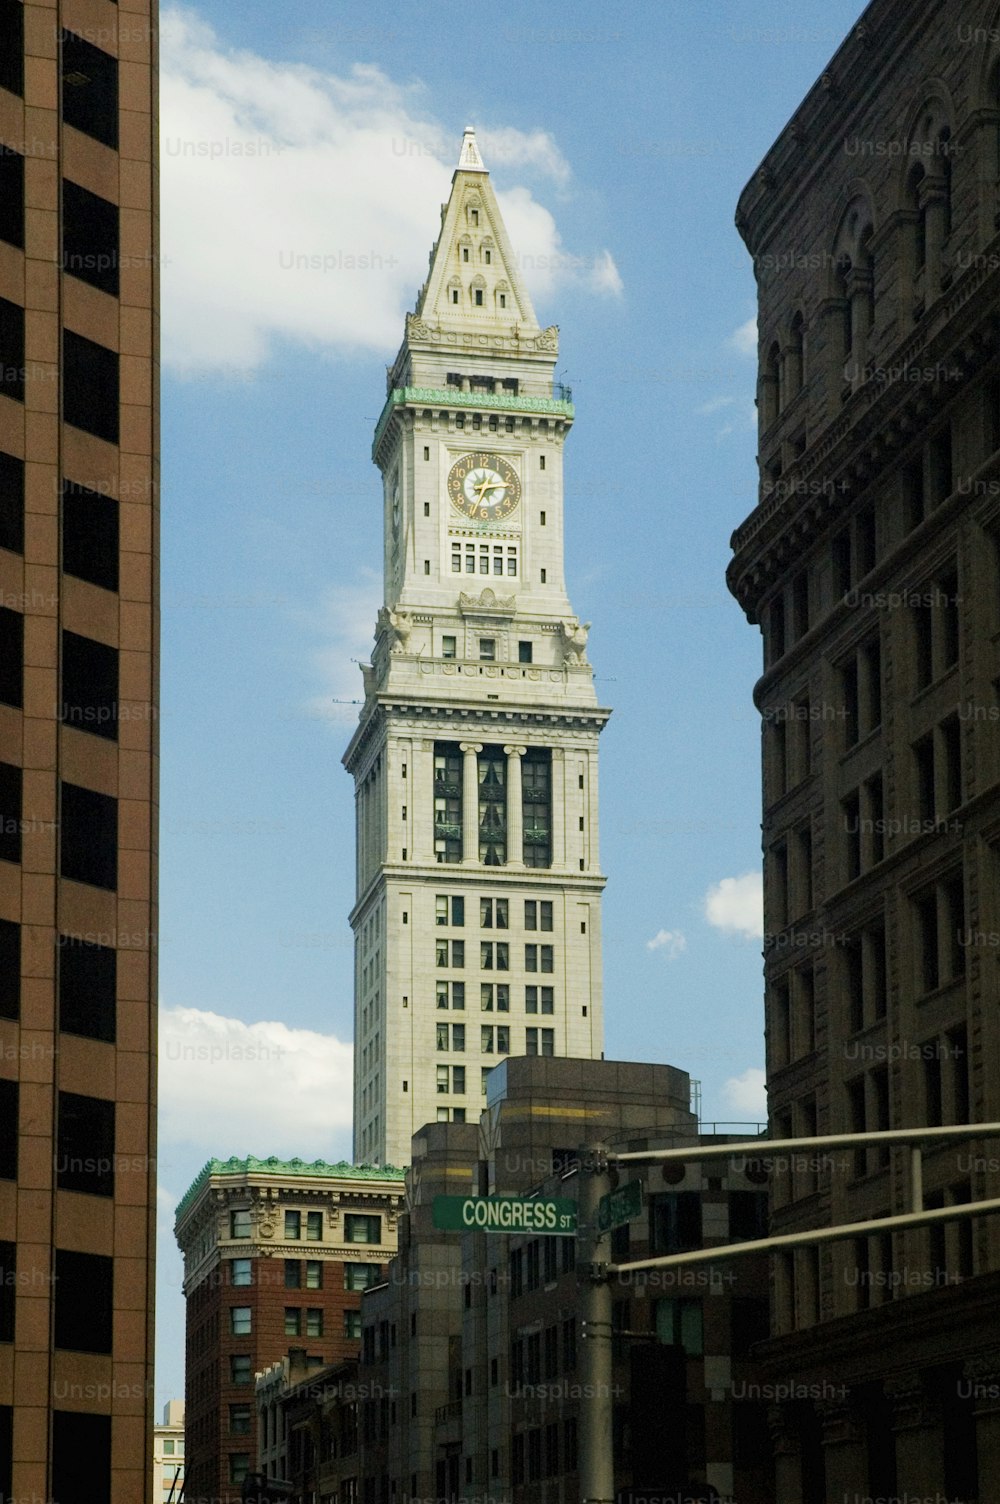 Un'alta torre dell'orologio bianca che domina una città